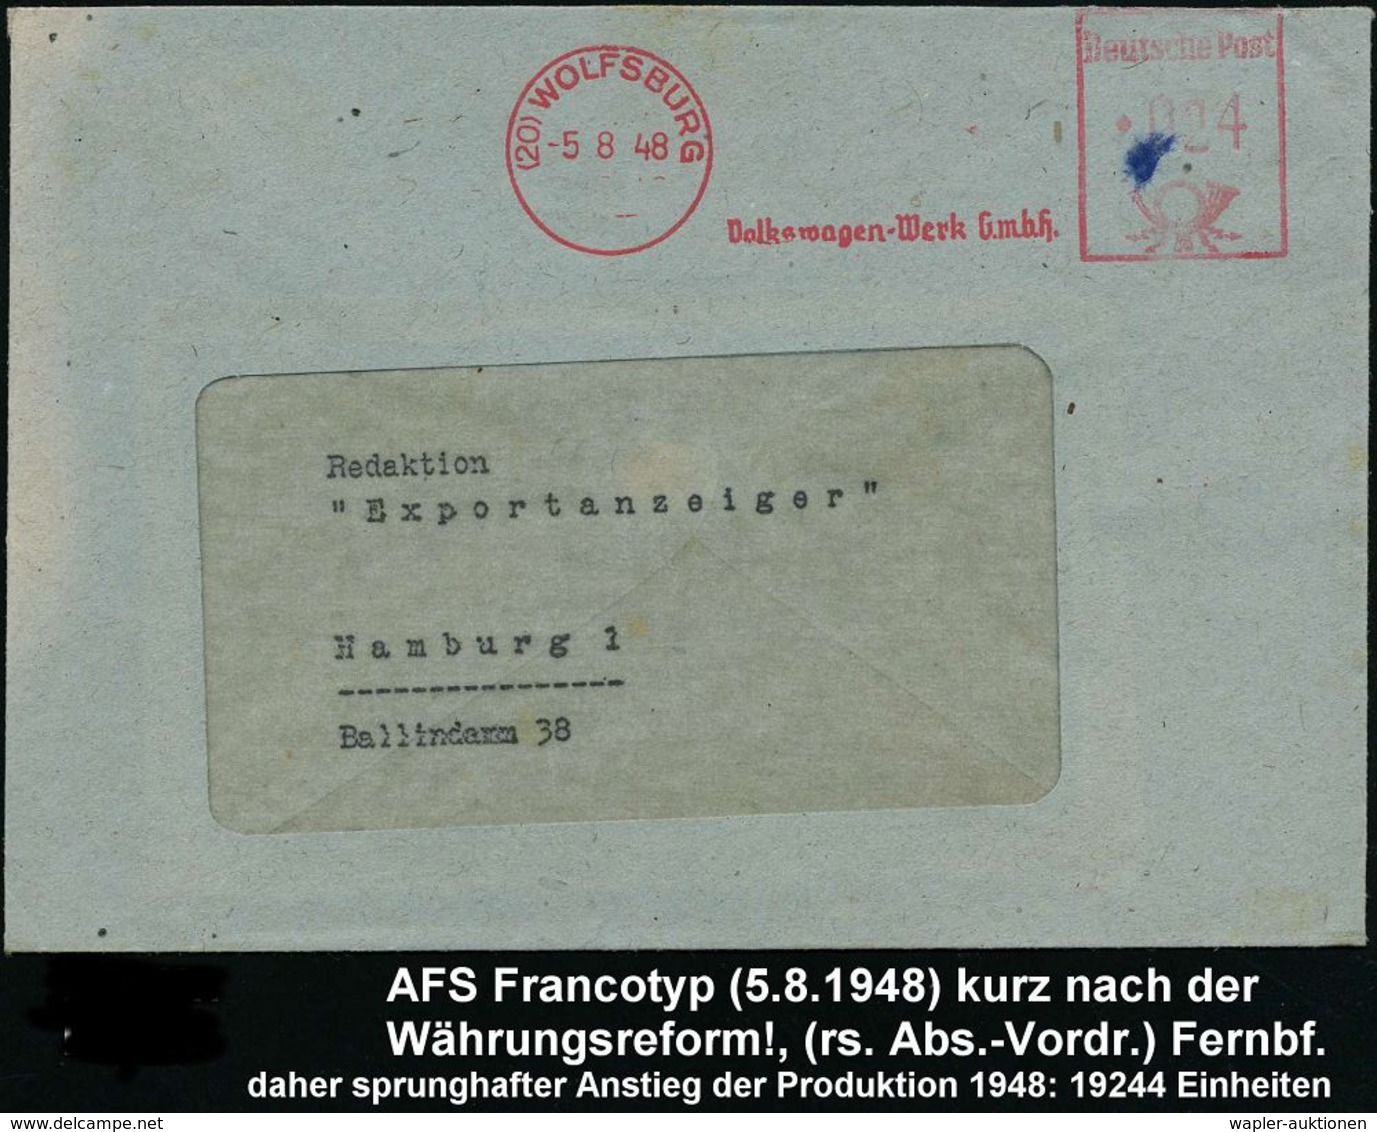 VOLKSWAGEN / VW / K.-D.-F.-WAGEN / PORSCHE : (20) WOLFSBURG/ Volkswagen-Werk GmbH 1948 (5.8.) AFS, Rs. Abs.-Vordruck Aus - Autos